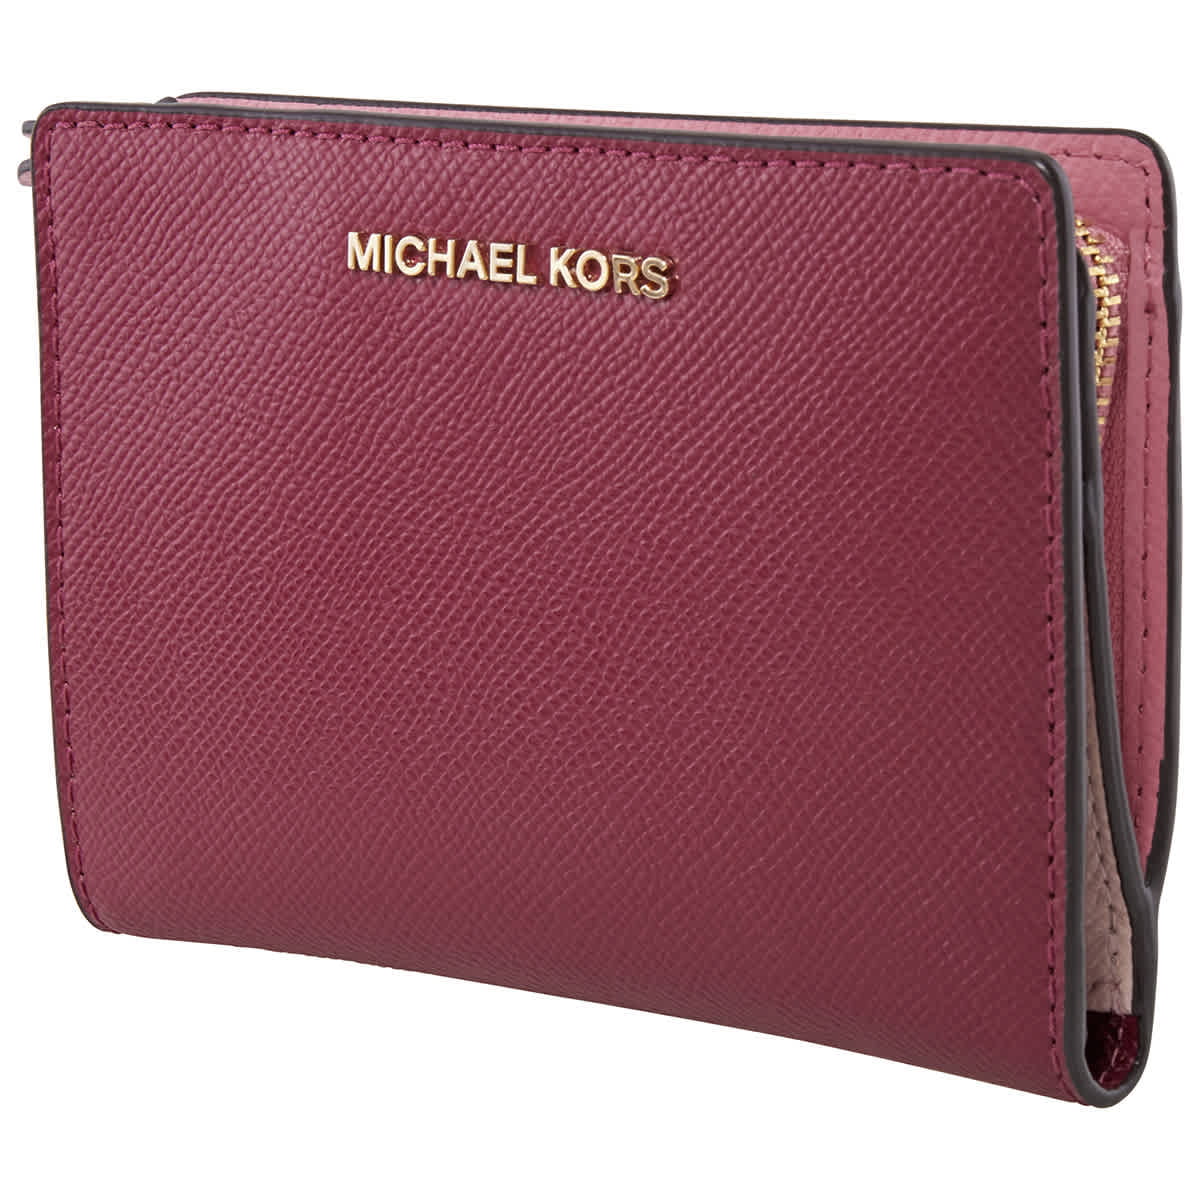 michael kors dusty rose wallet